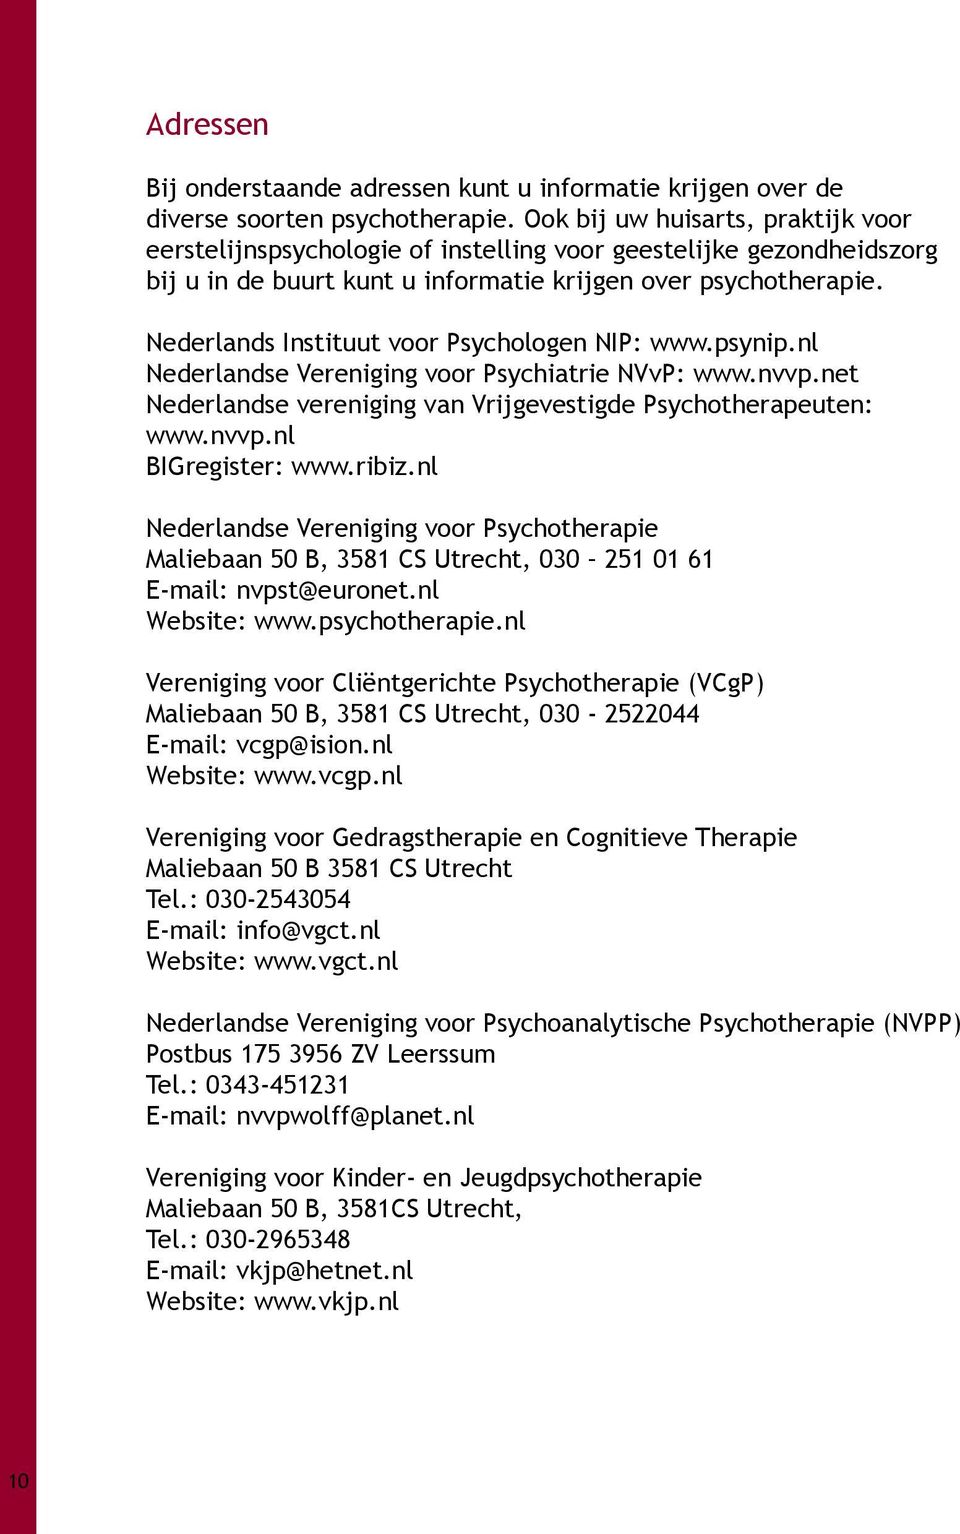 Nederlands Instituut voor Psychologen NIP: www.psynip.nl Nederlandse Vereniging voor Psychiatrie NVvP: www.nvvp.net Nederlandse vereniging van Vrijgevestigde Psychotherapeuten: www.nvvp.nl BIGregister: www.